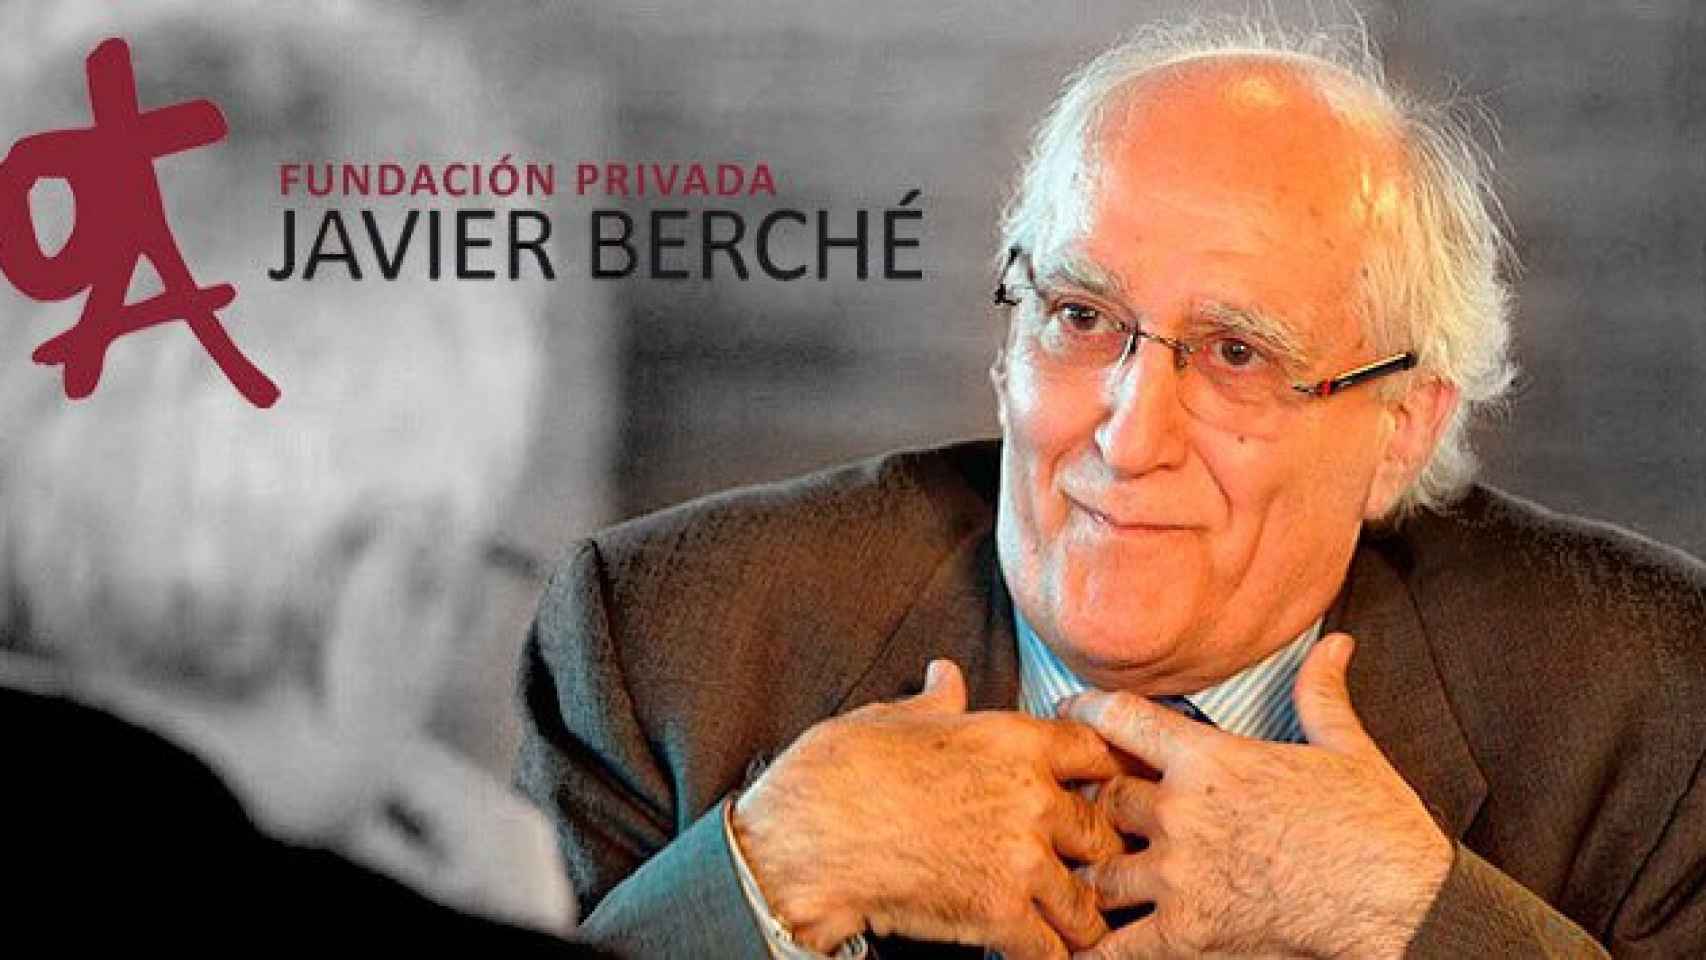 El doctor Javier Berché y la imagen de su fundación.